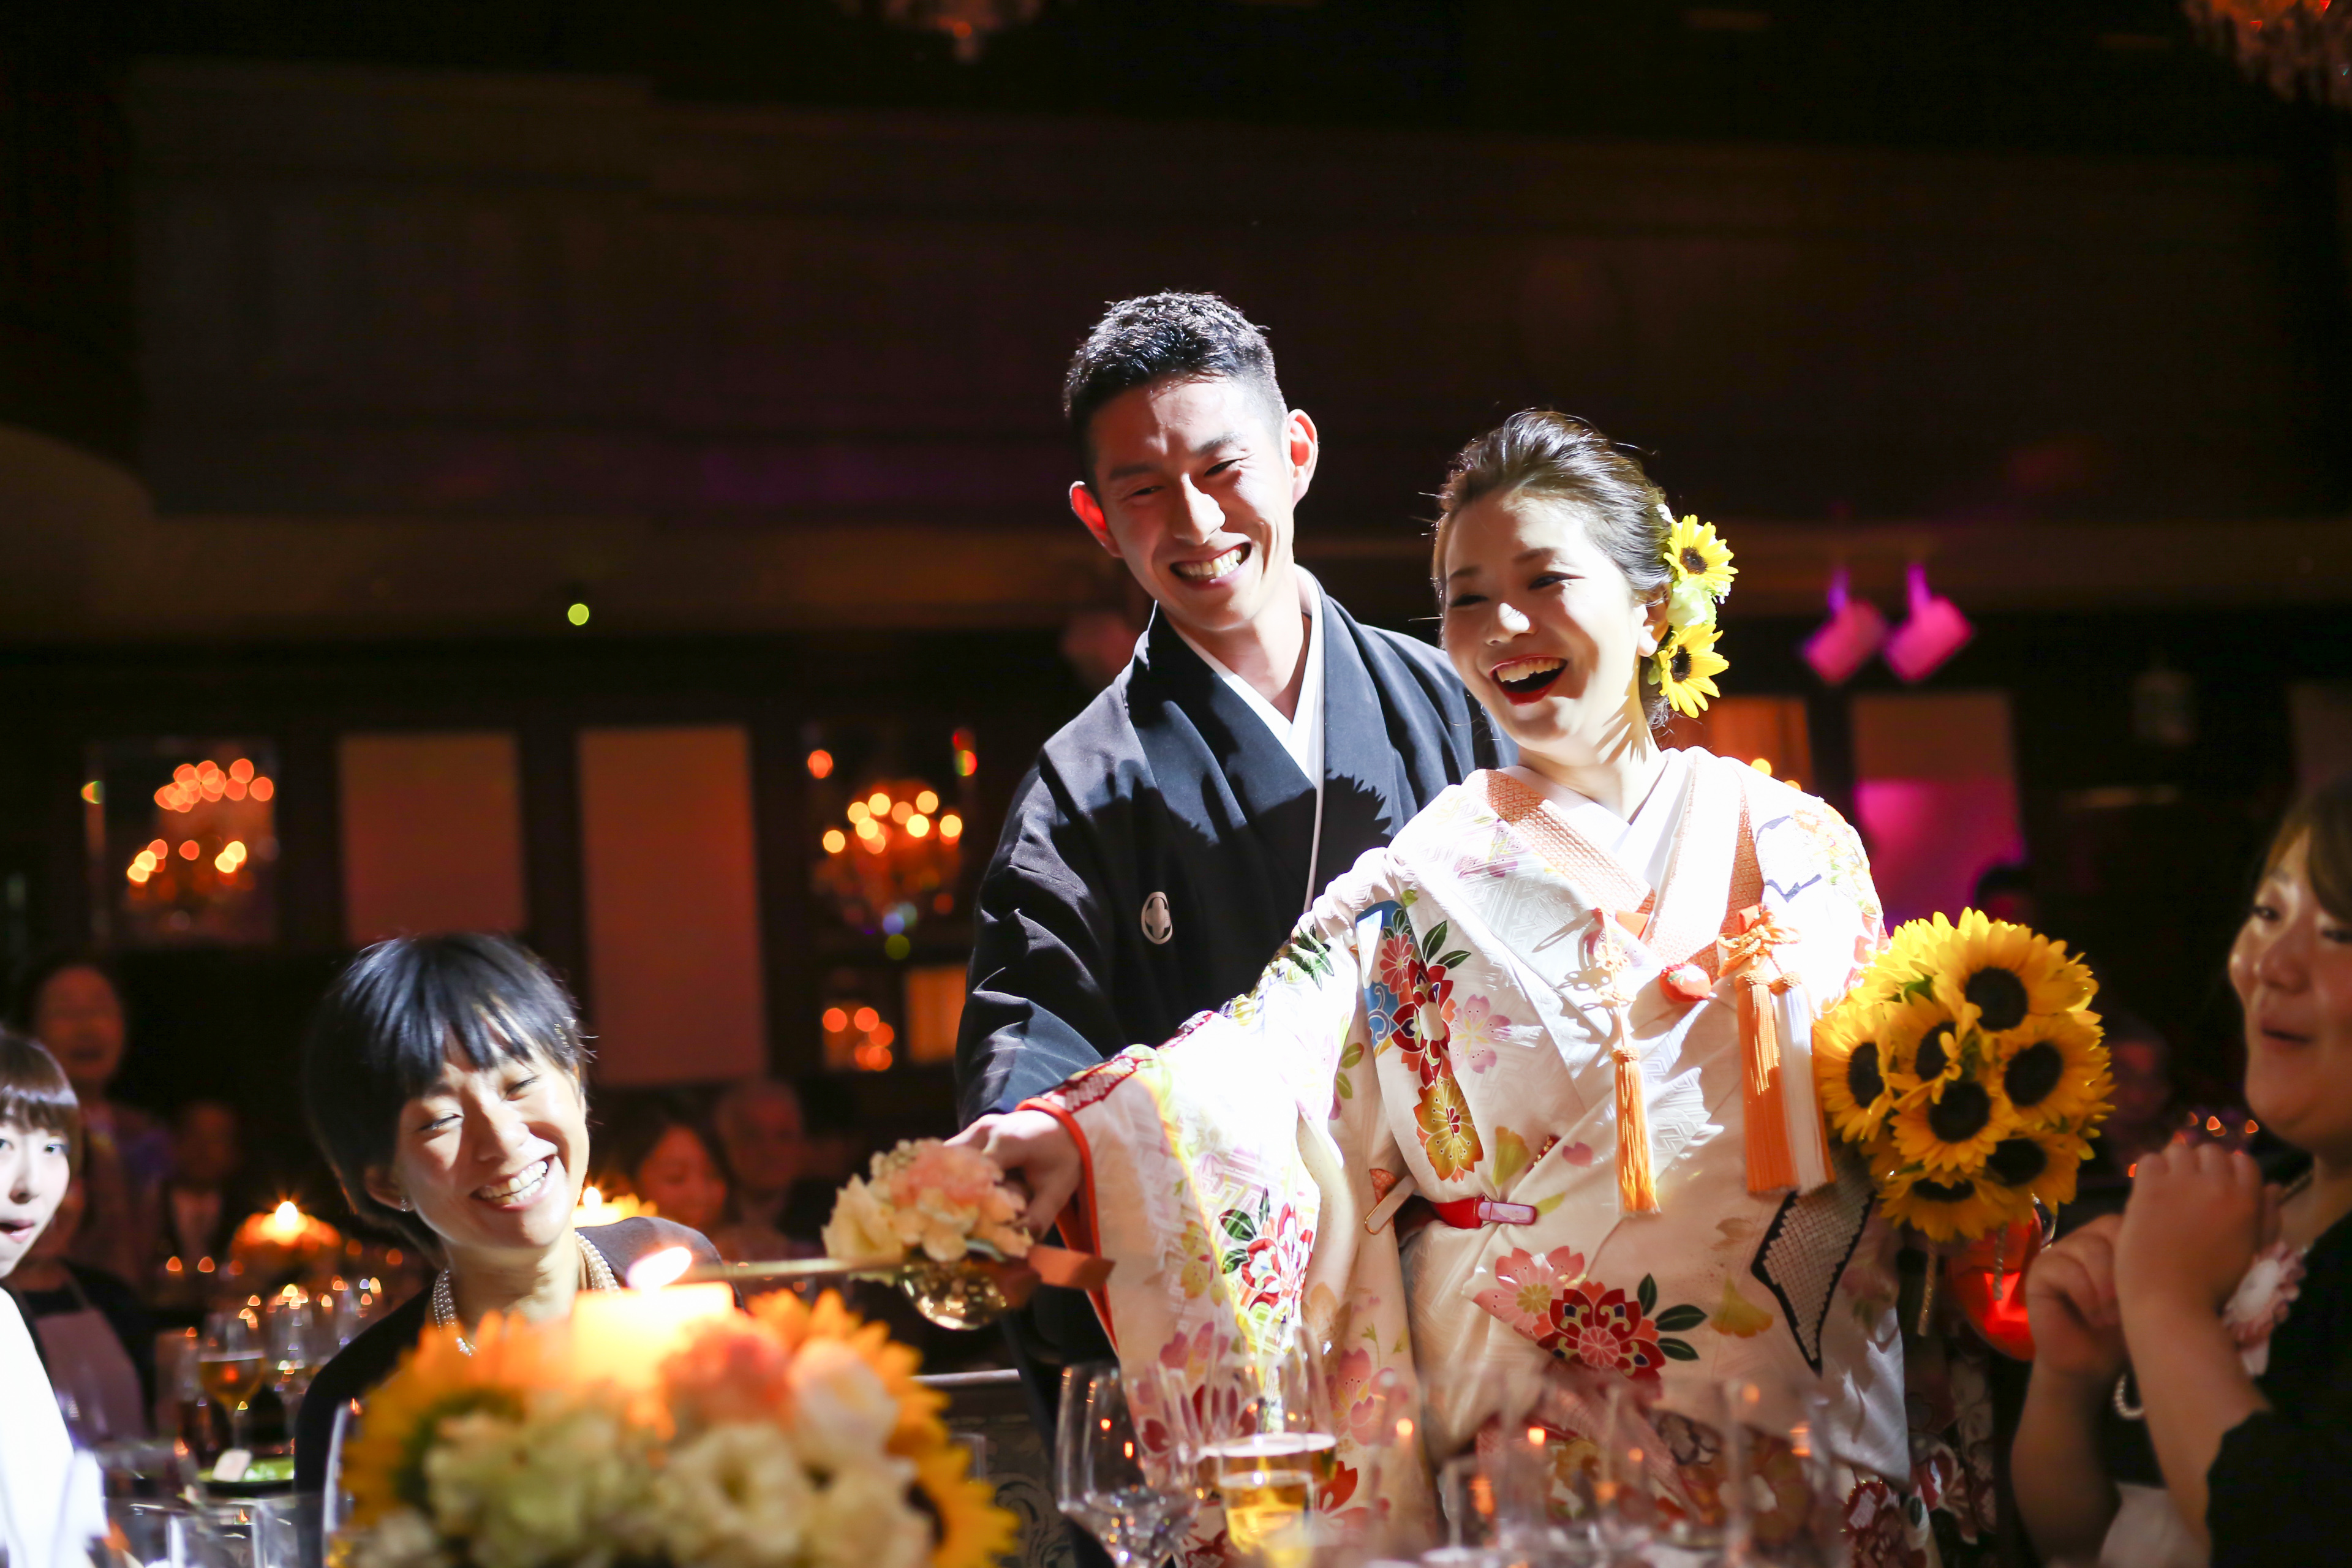 19年に和装の結婚式でおすすめのbgmは ケーキ入刀などシーン別にご紹介 神戸旧居留地の結婚式場 神戸セントモルガン教会神戸セントモルガン教会